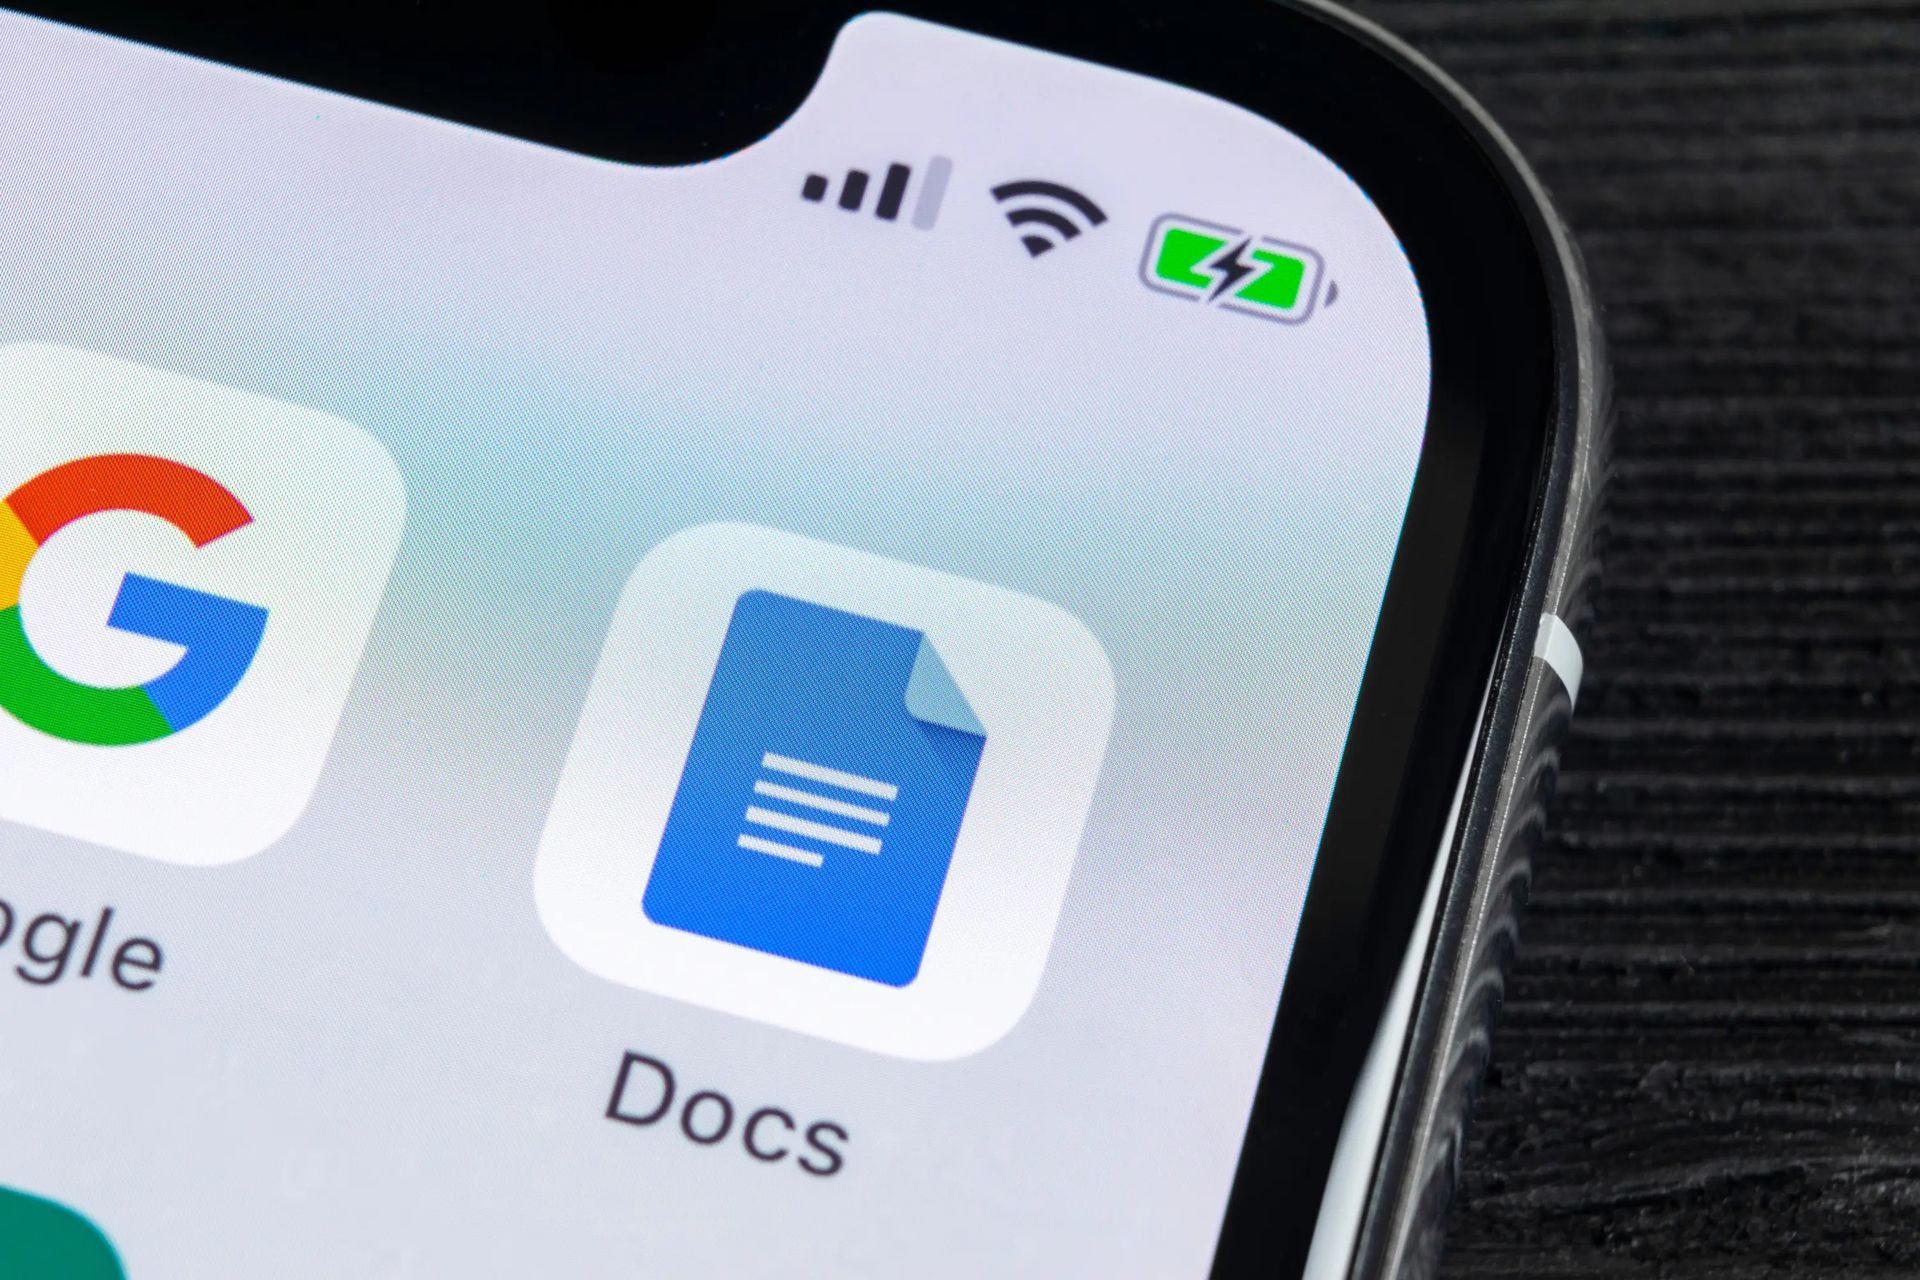 Aujourd'hui, nous sommes ici pour vous montrer comment doubler l'espace dans Google Docs pour les systèmes PC, Android et iOS.